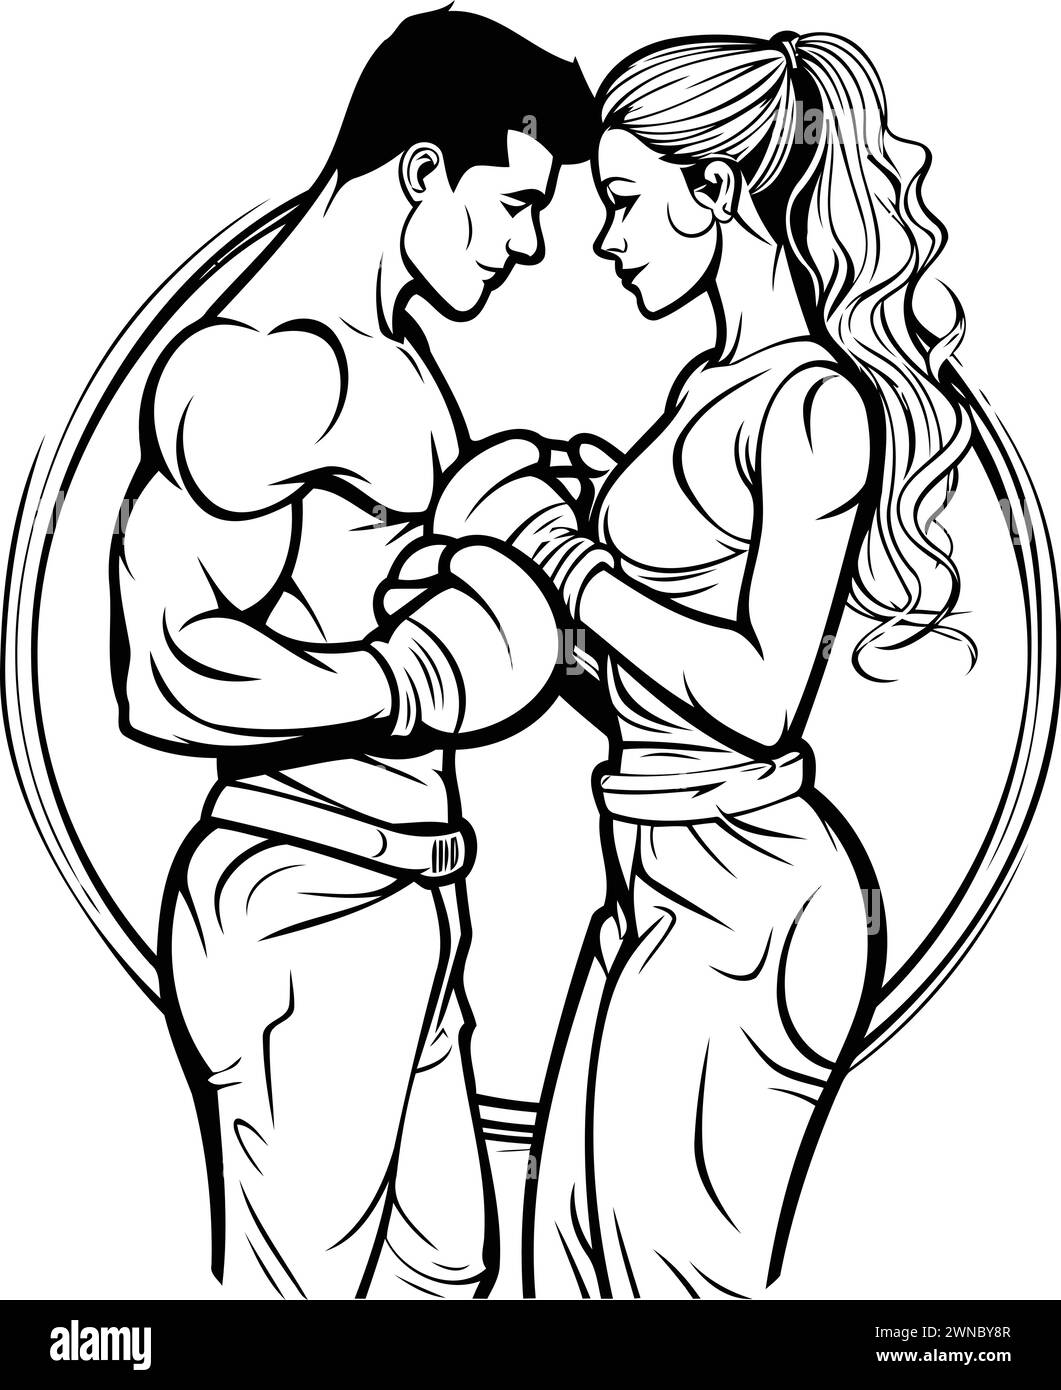 Vektor-Illustration von zwei Liebenden, die sich küssen. Umarmen und küssen. Stock Vektor